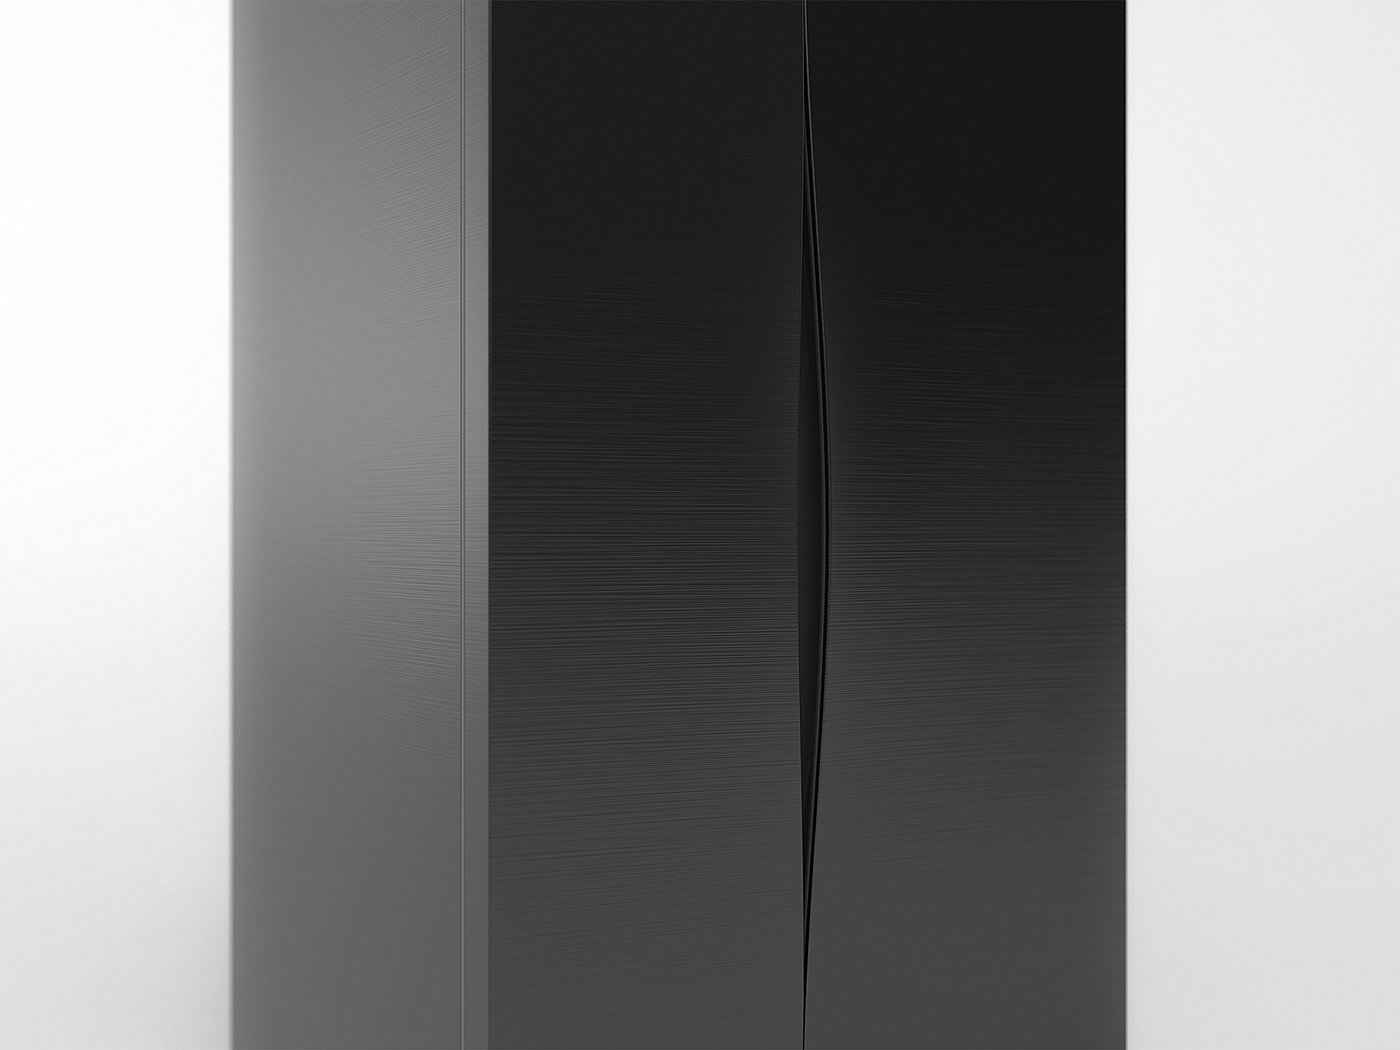 Crevice，韩国，冰箱，黑色，